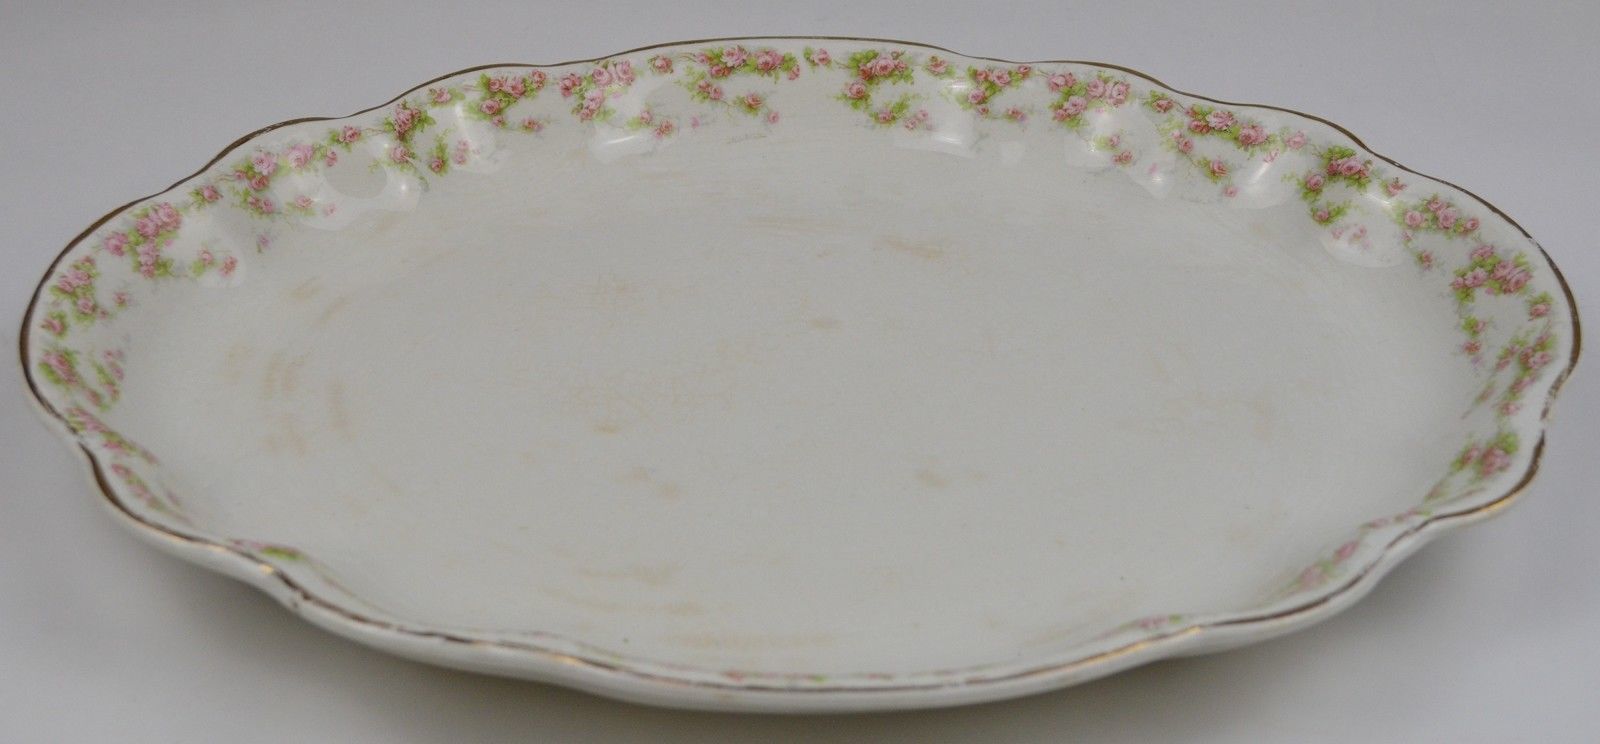 Primary image for Vintage Homer Laughlin China Hudson Pink Floral Pattern Oval Serving Platter 15"